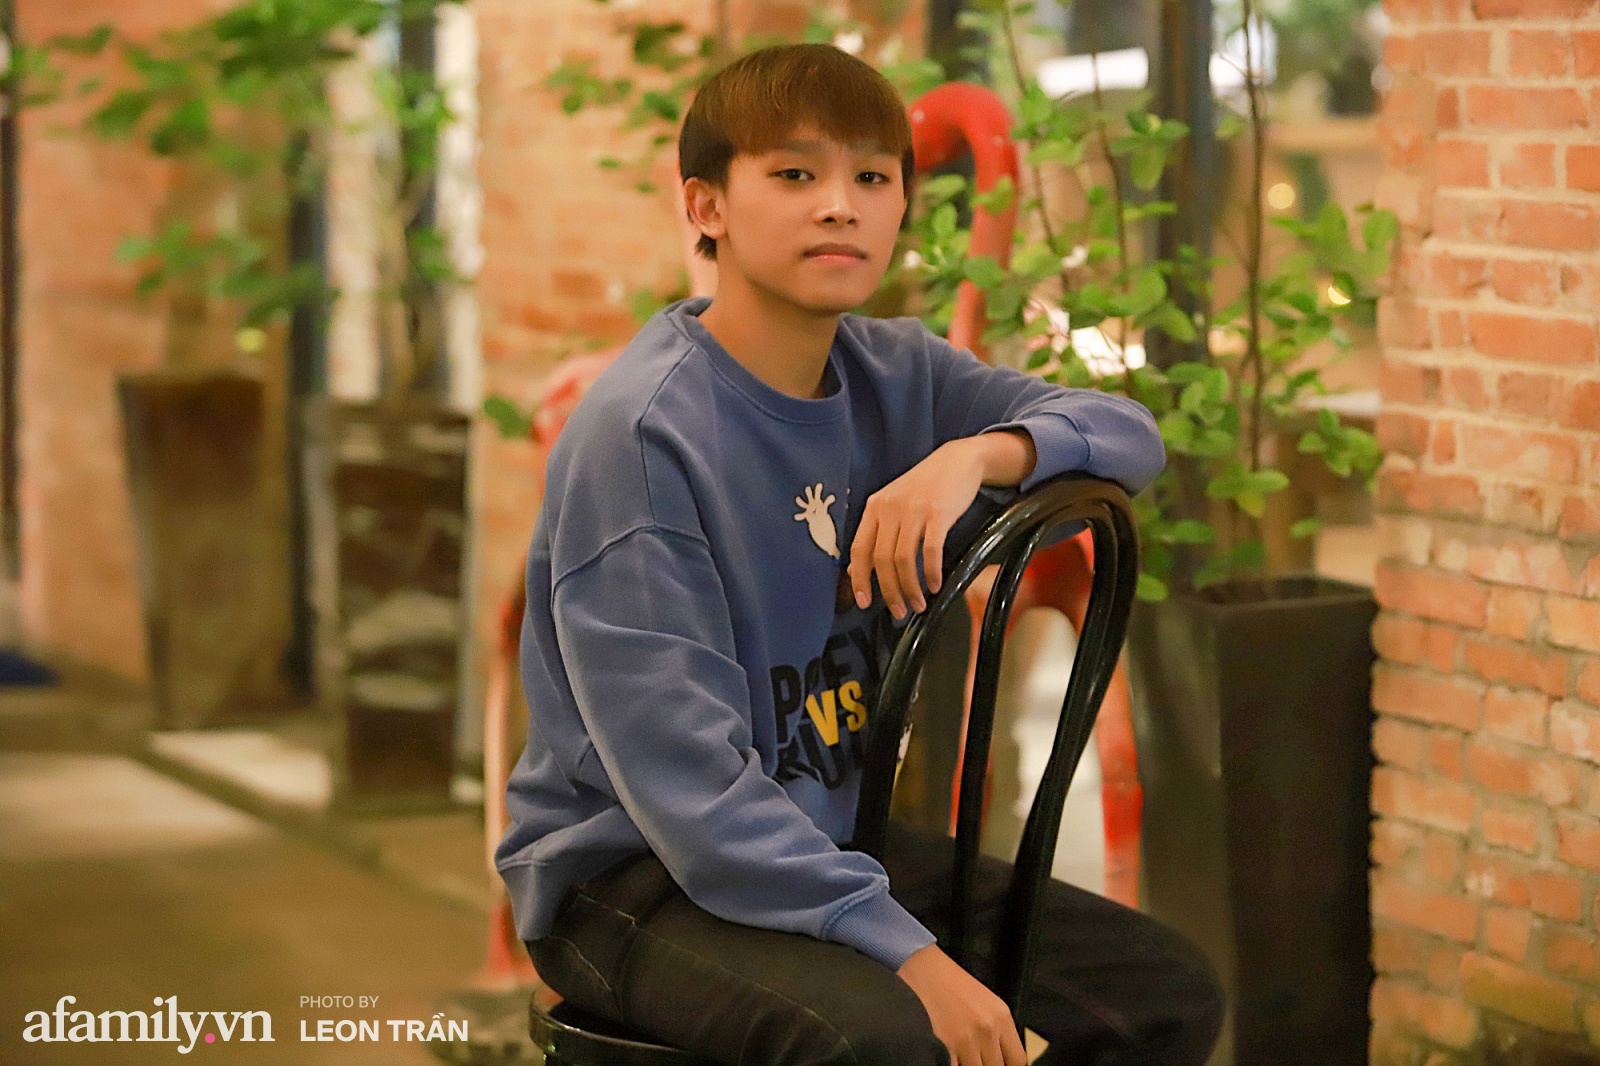 Hồ Văn Cường sau Vietnam Idol Kids: Là chàng trai 18 tuổi, mặc quần áo đẹp, có tài khoản riêng và mong ước mua nhà cho ba mẹ  - Ảnh 9.